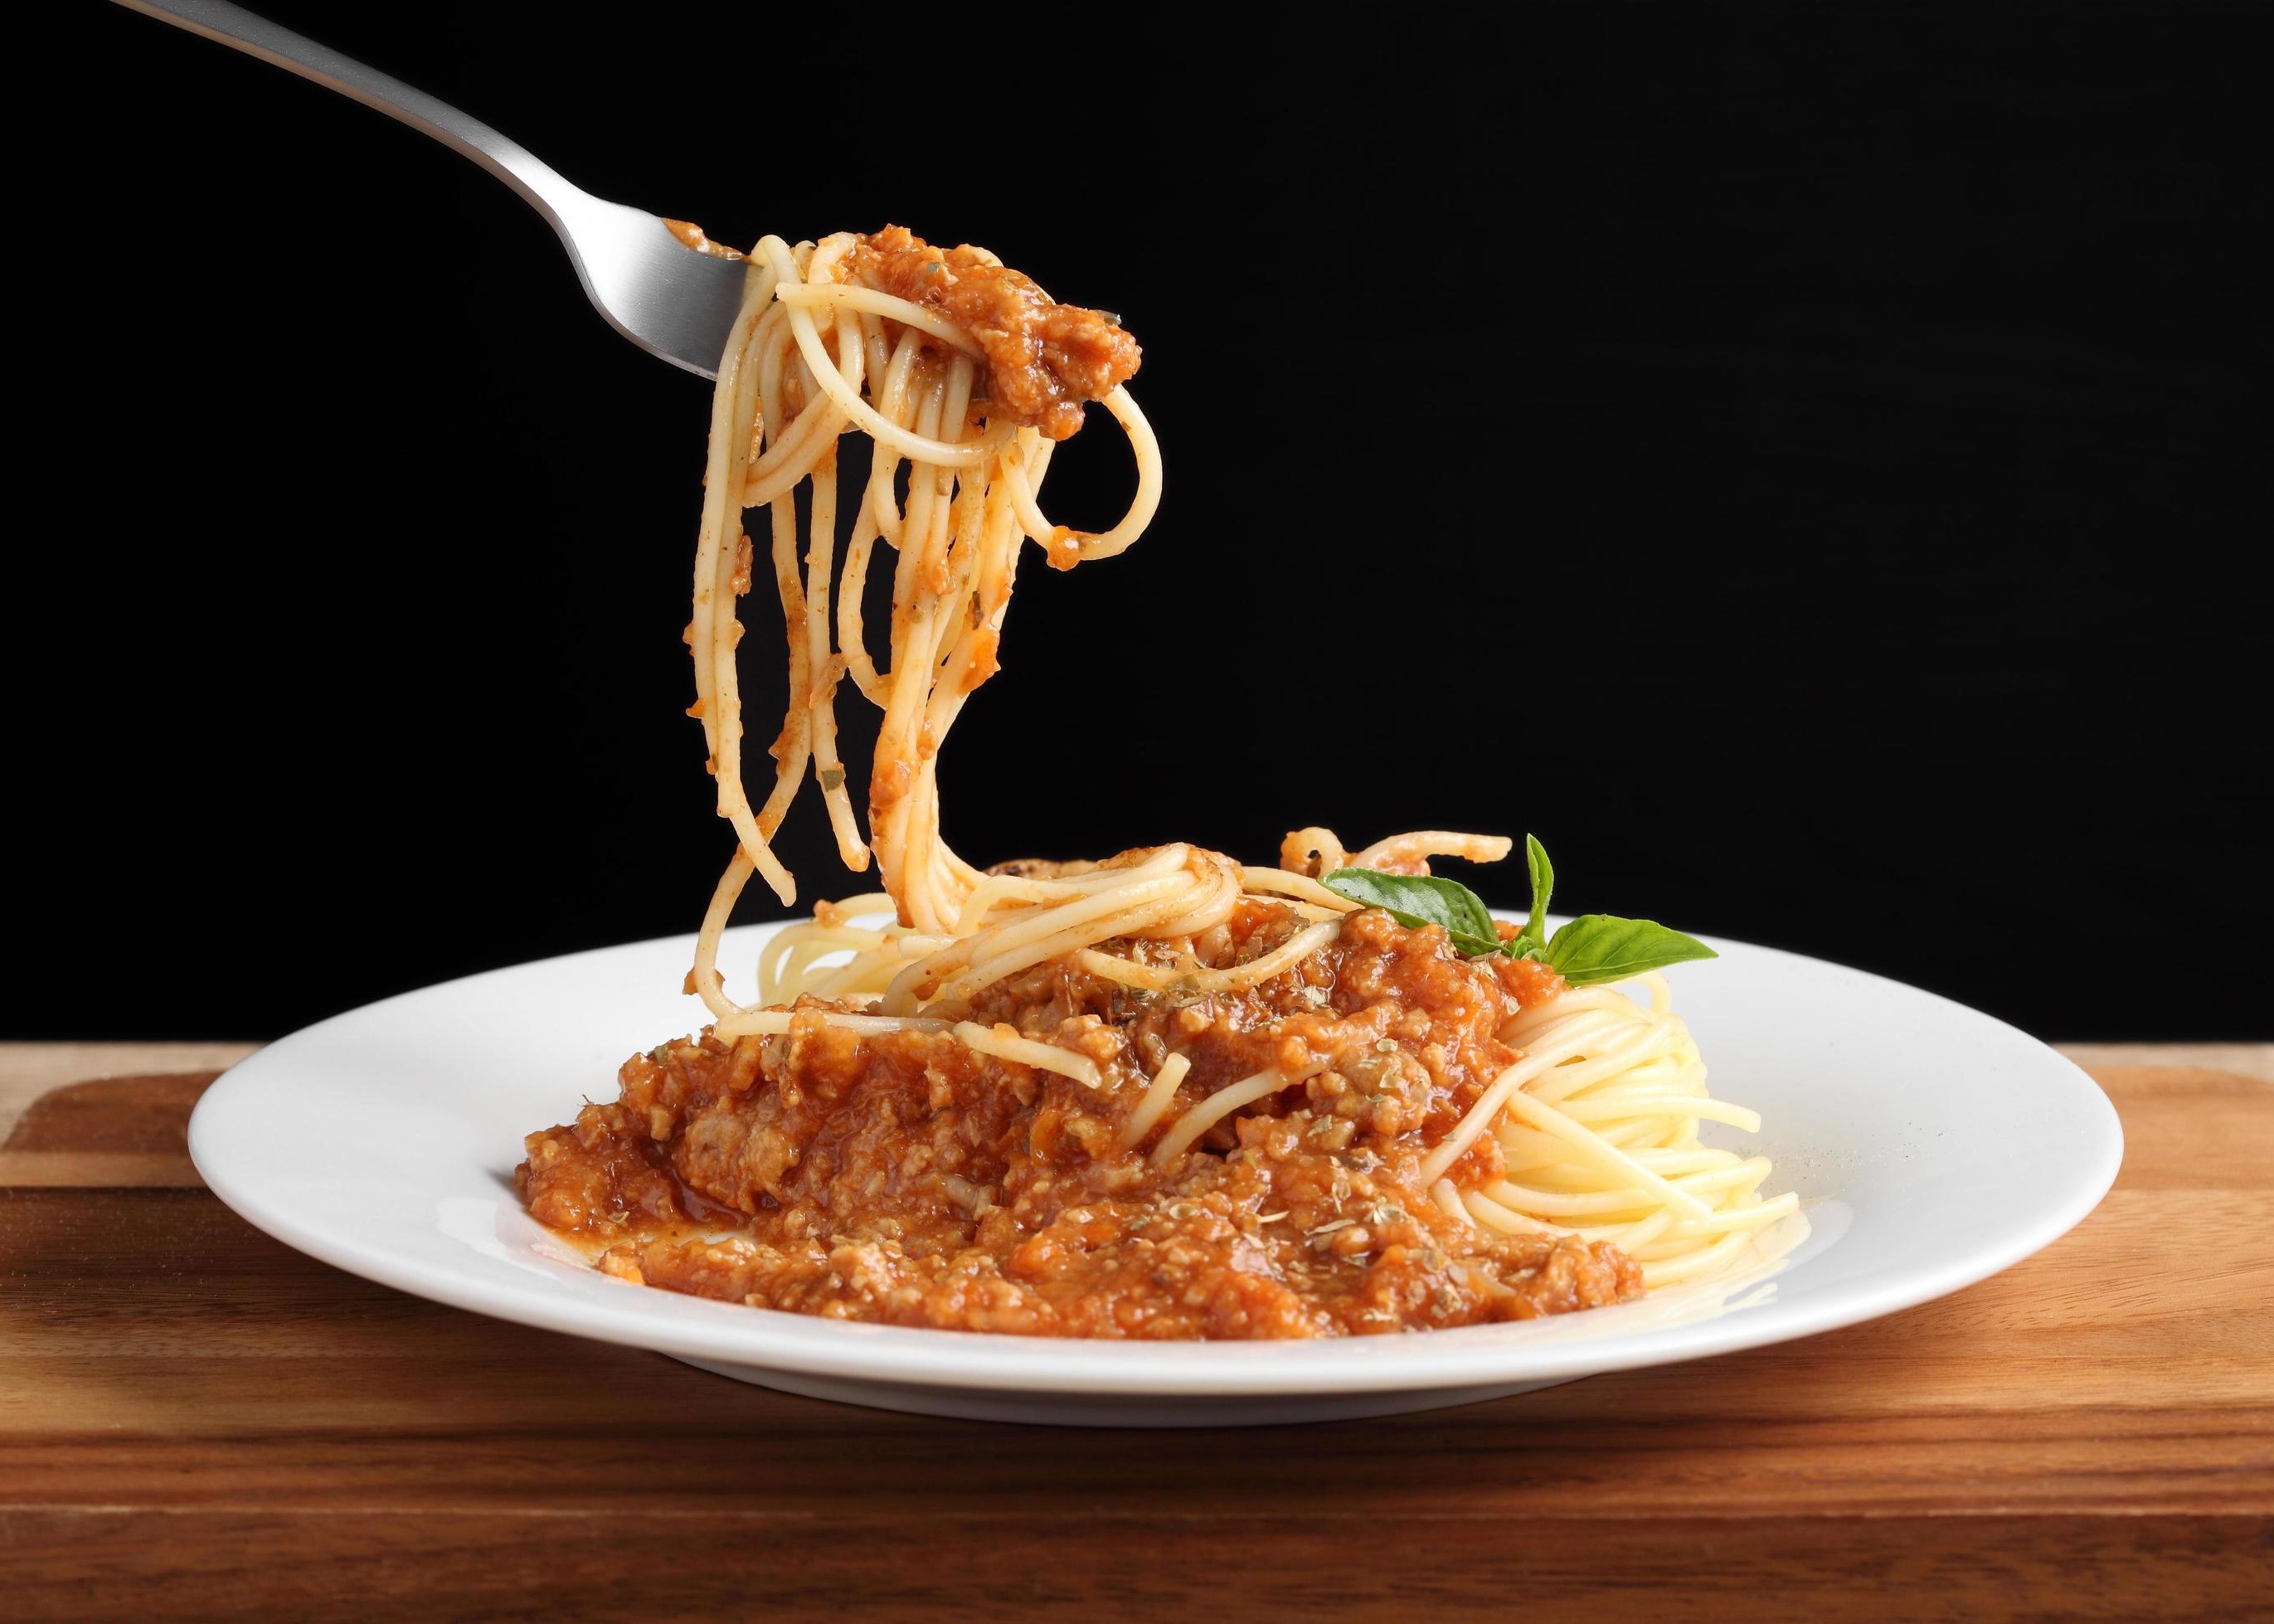 We The Italians Five of The Best Italian Restaurants in New Jersey